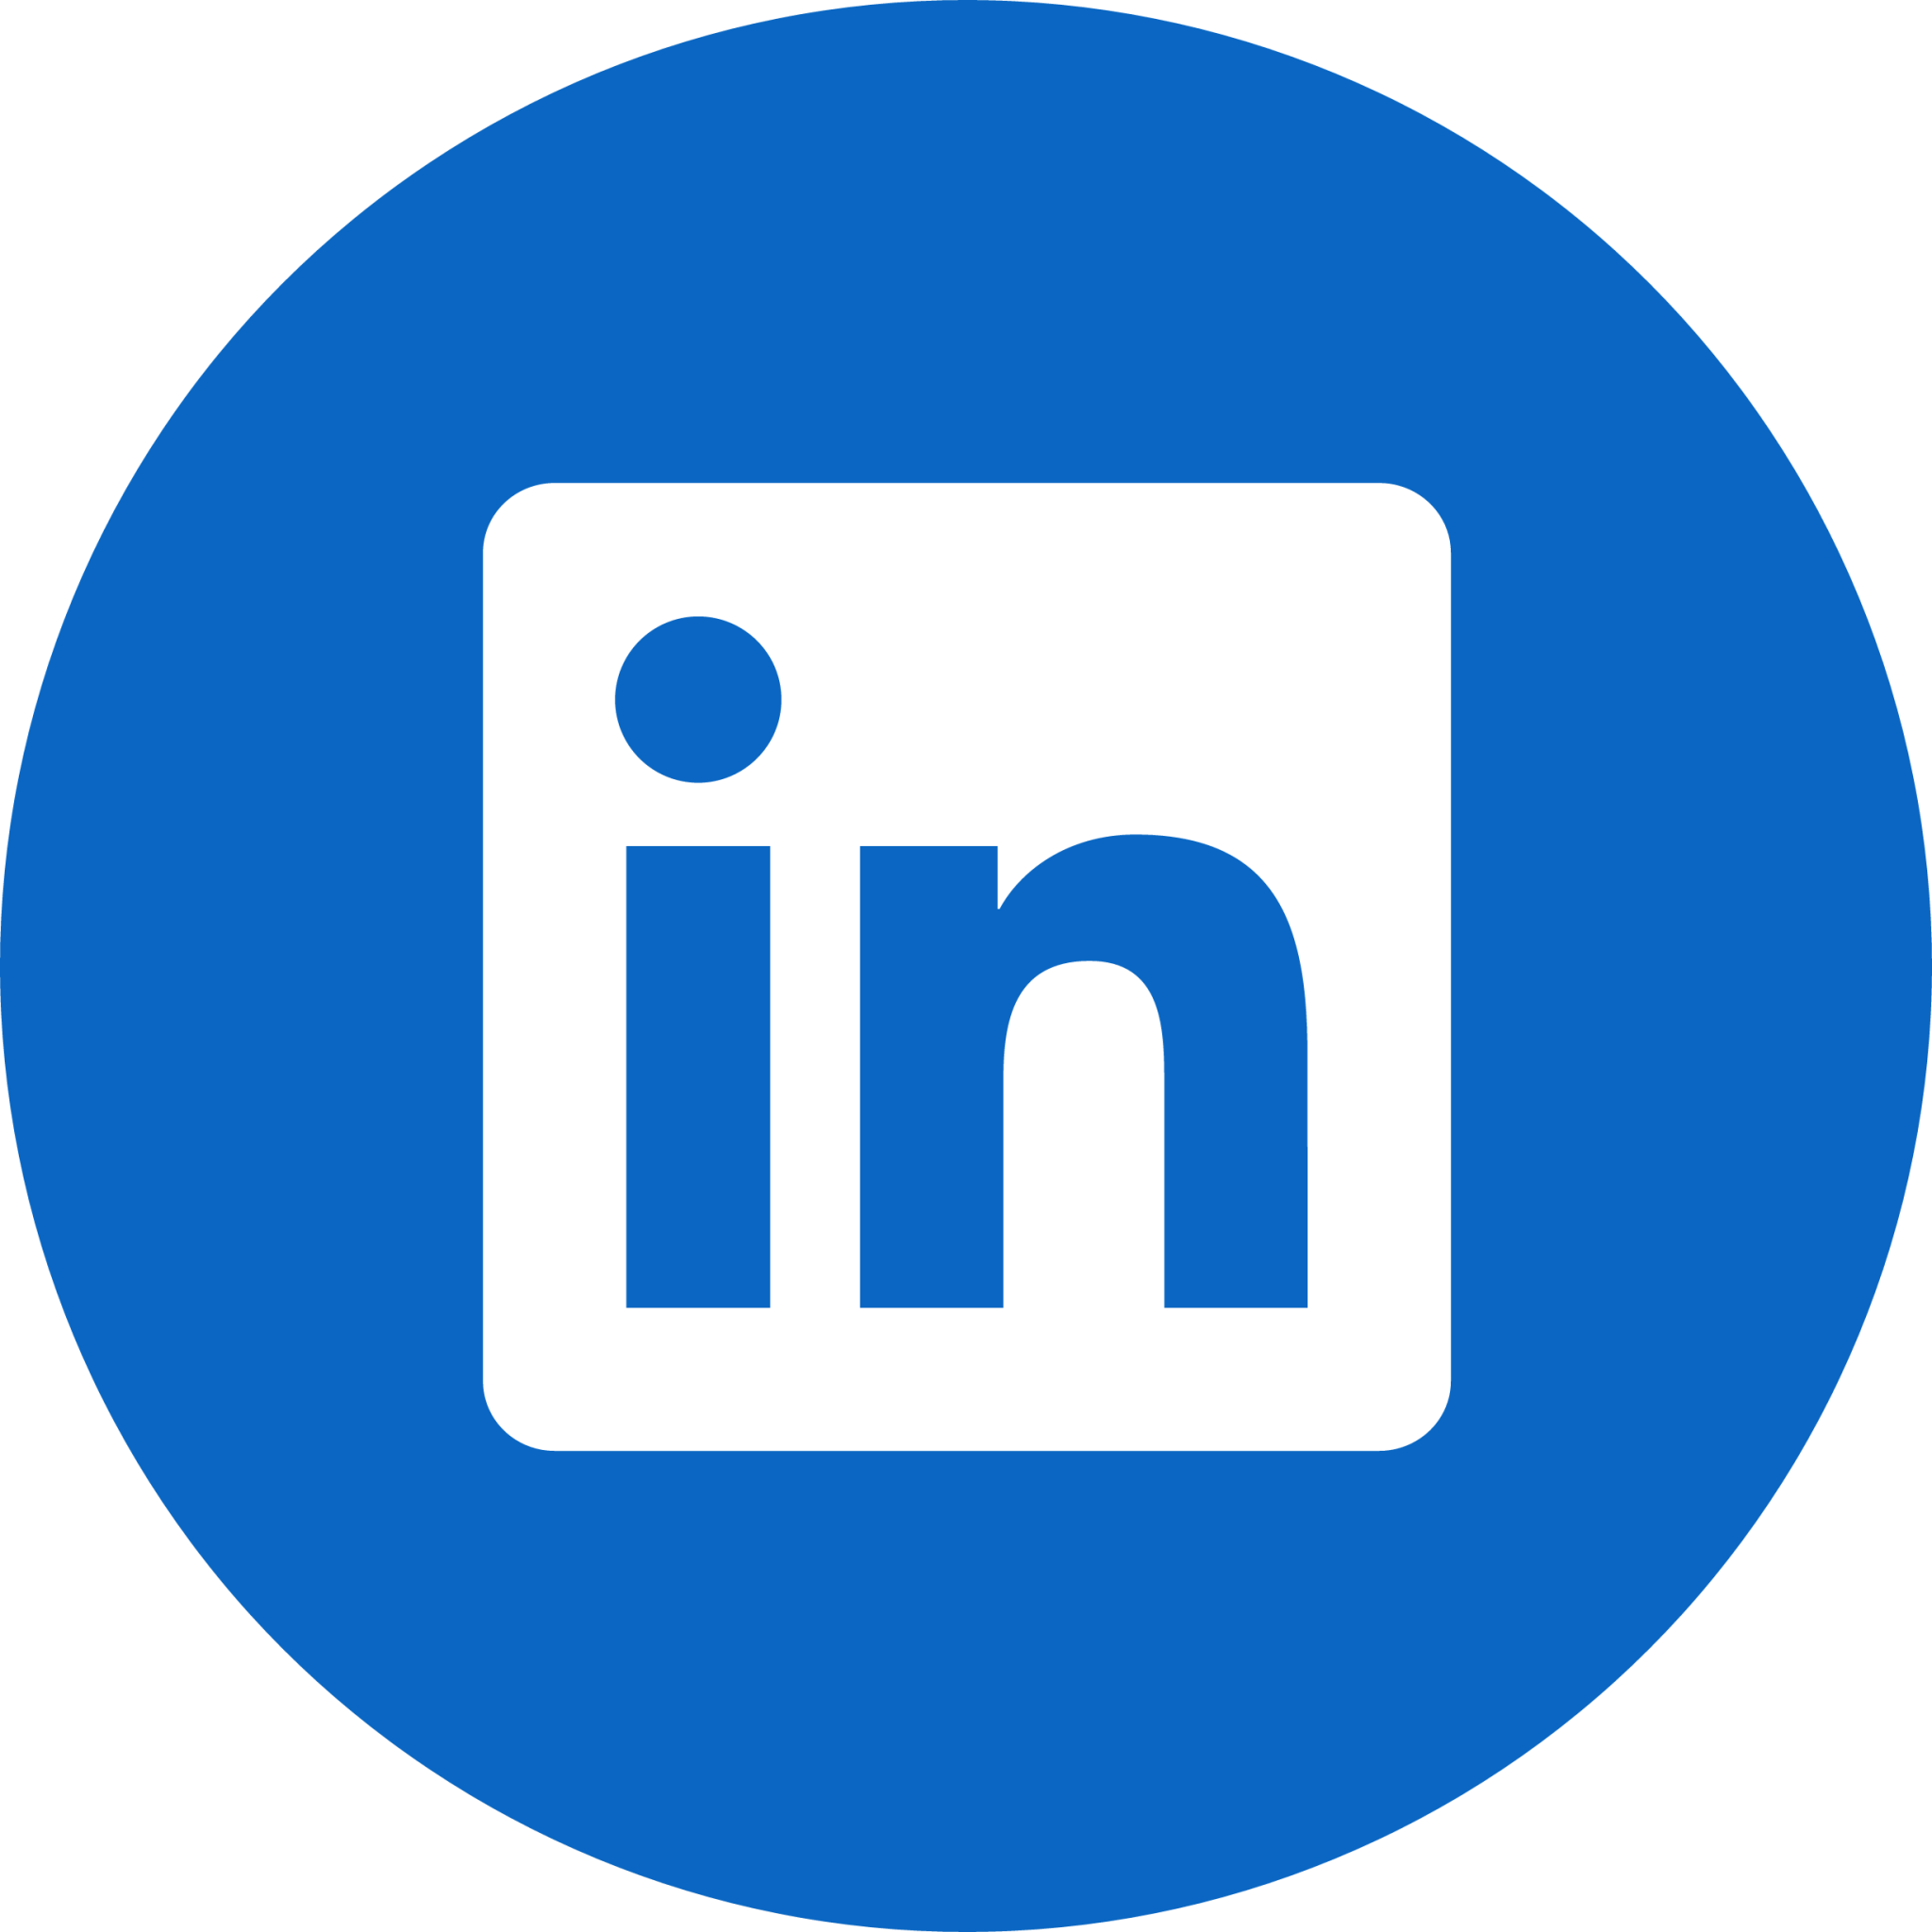 Visit our LinkedIn profile